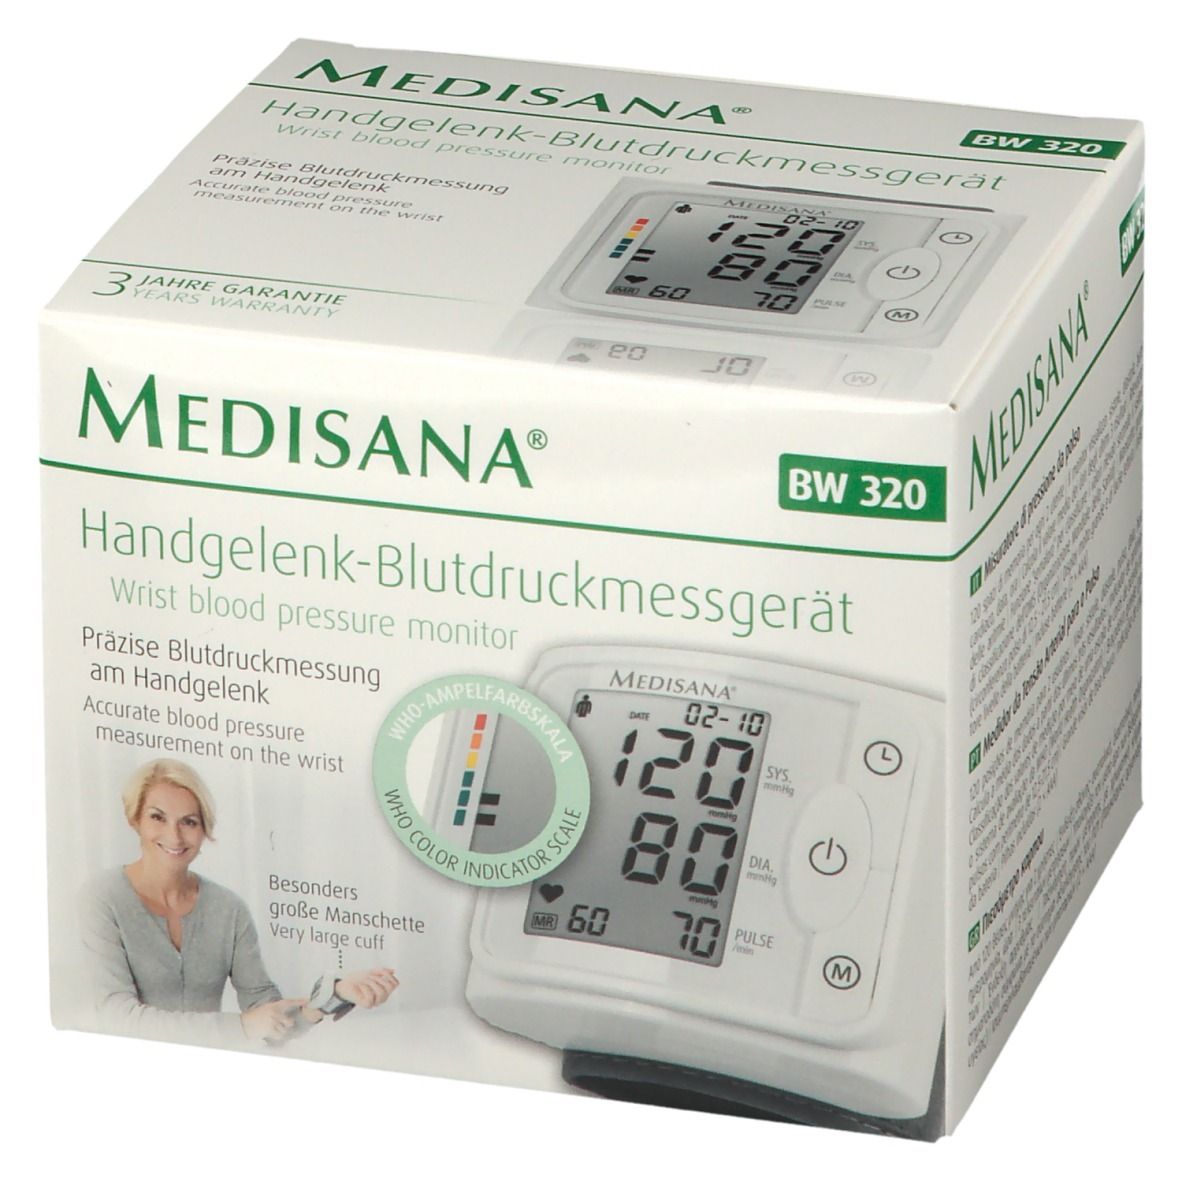 Medisana Handgelenk-Blutdruckmessgerät BW St 1 - Redcare Apotheke 320